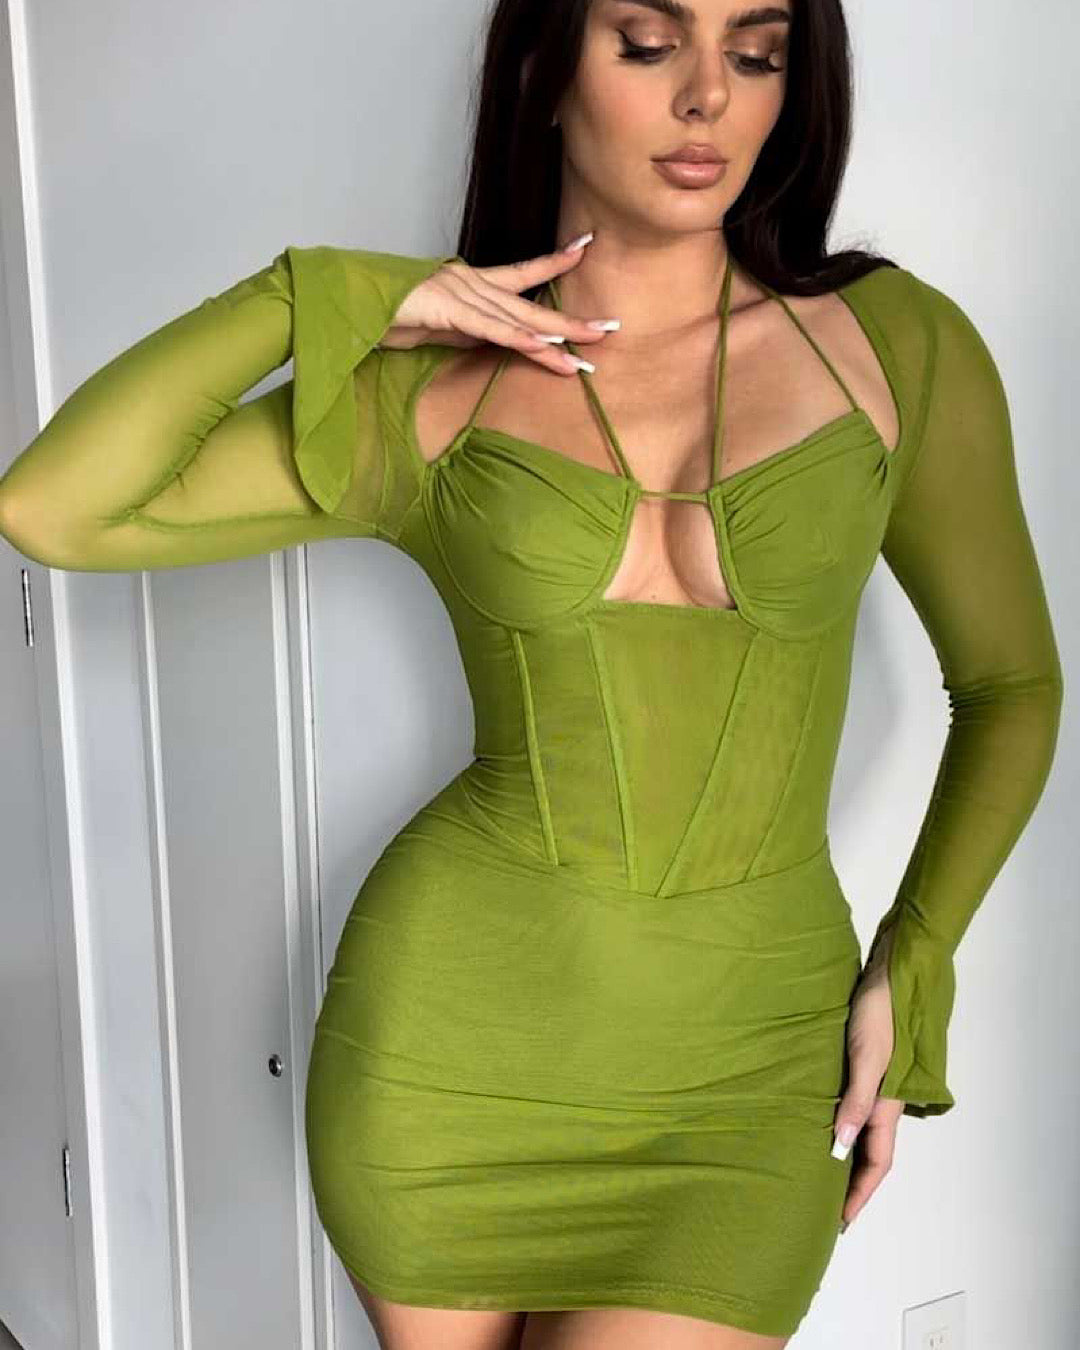 Cancun Vibes - Green Dress